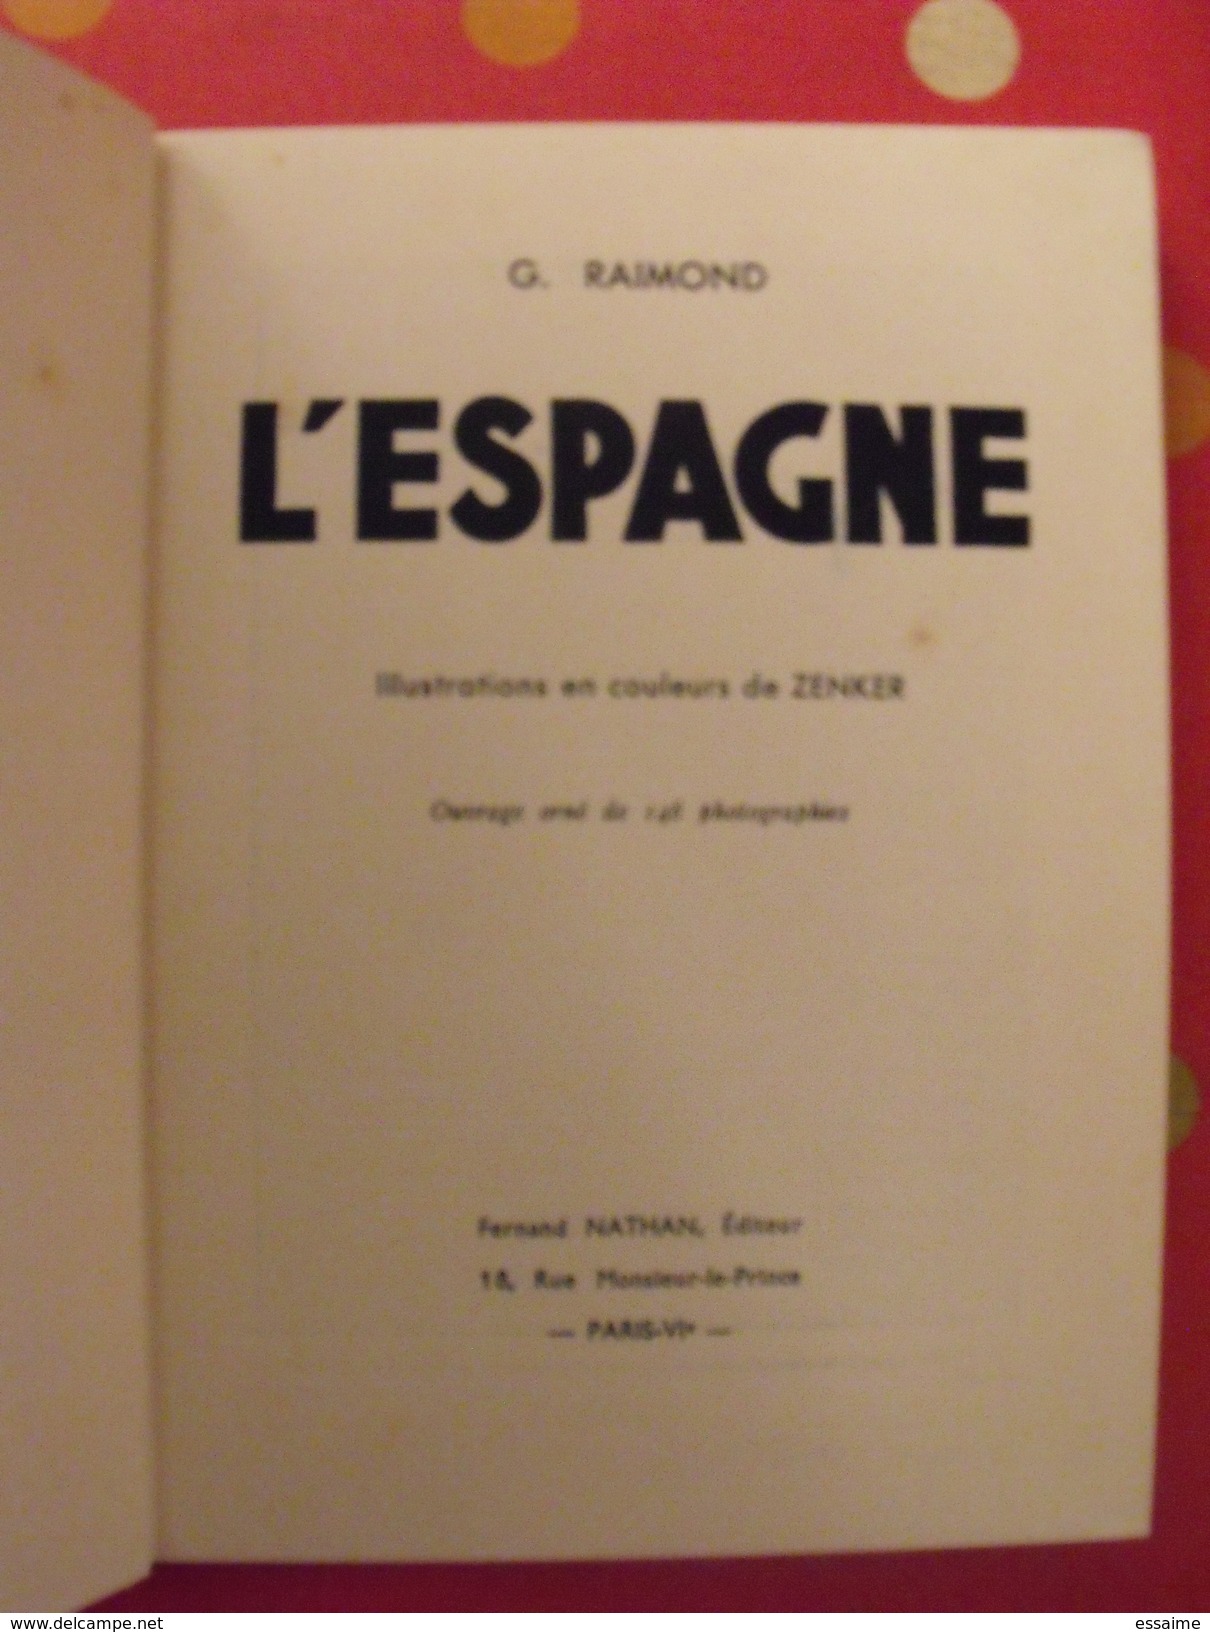 L'Espagne. G. Raimond. Fernand Nathan 1948. Illust Zenker - Non Classificati